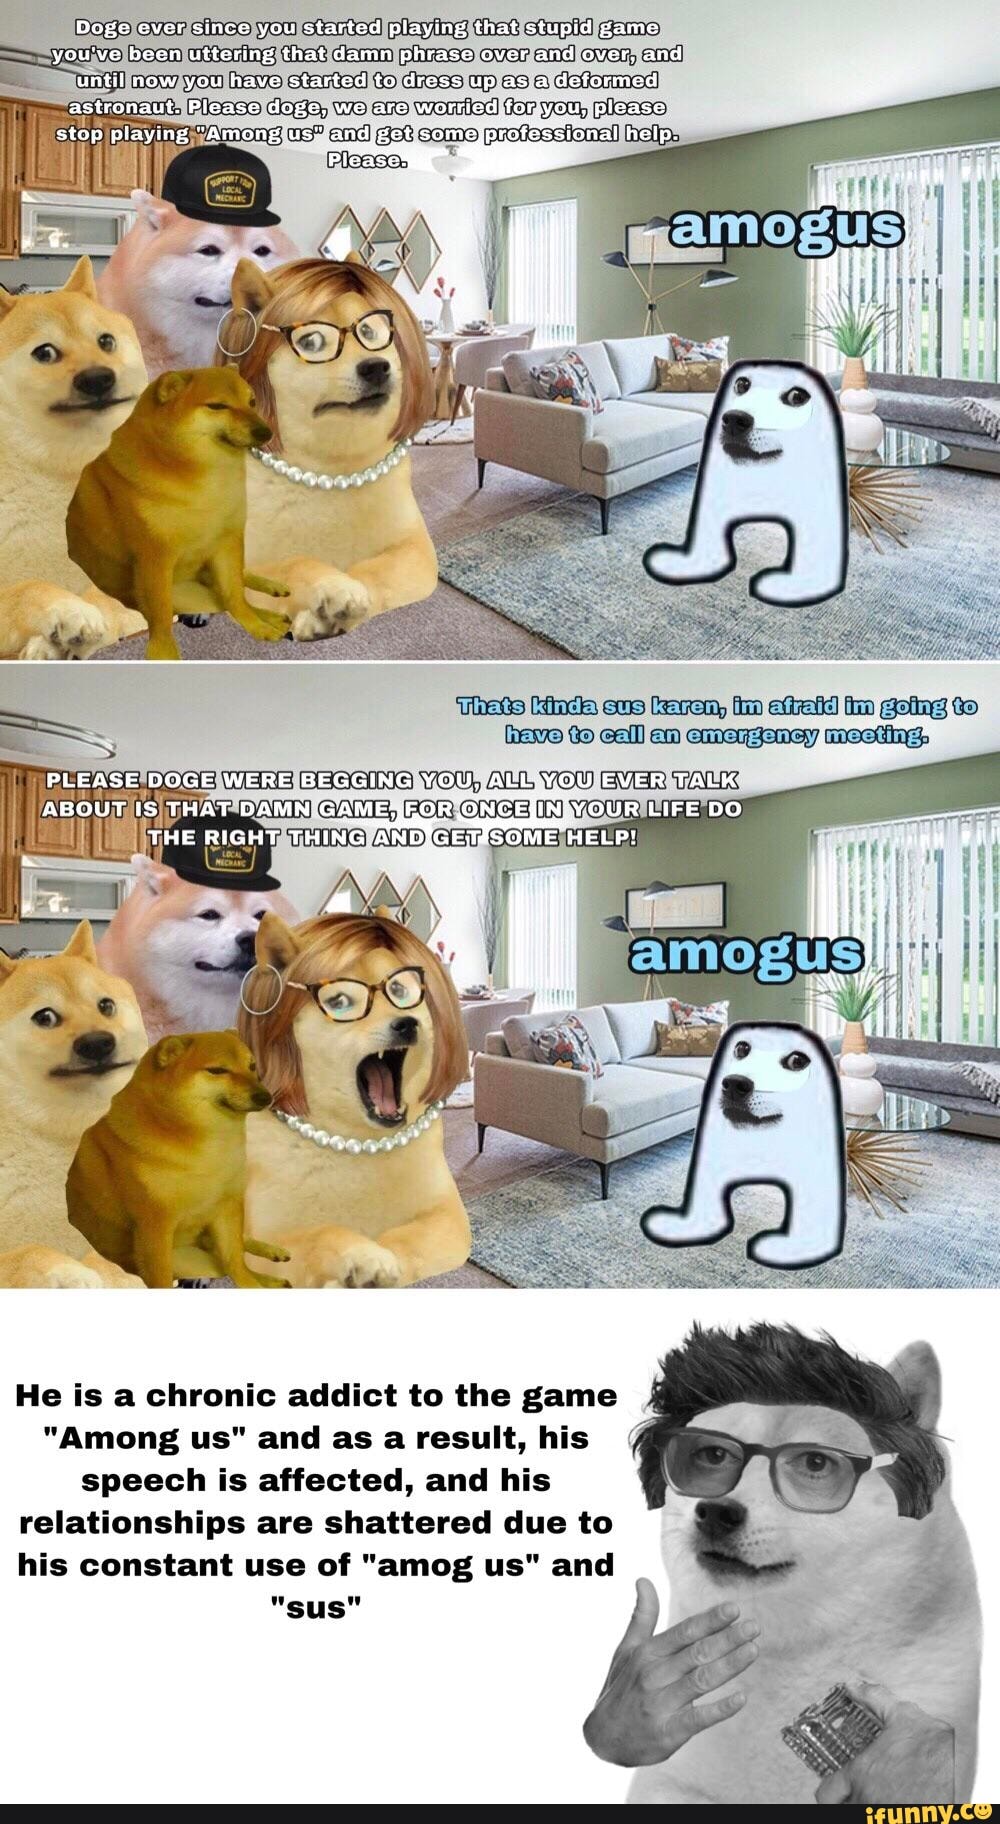 Doge Bot on X: #memes #funny #doge #postironic #postironicdoge #ifunny #XD  #lol #dogememe #dogecoin #dogecapital #DogEatingFestival #dogebtc #dogeusd   / X